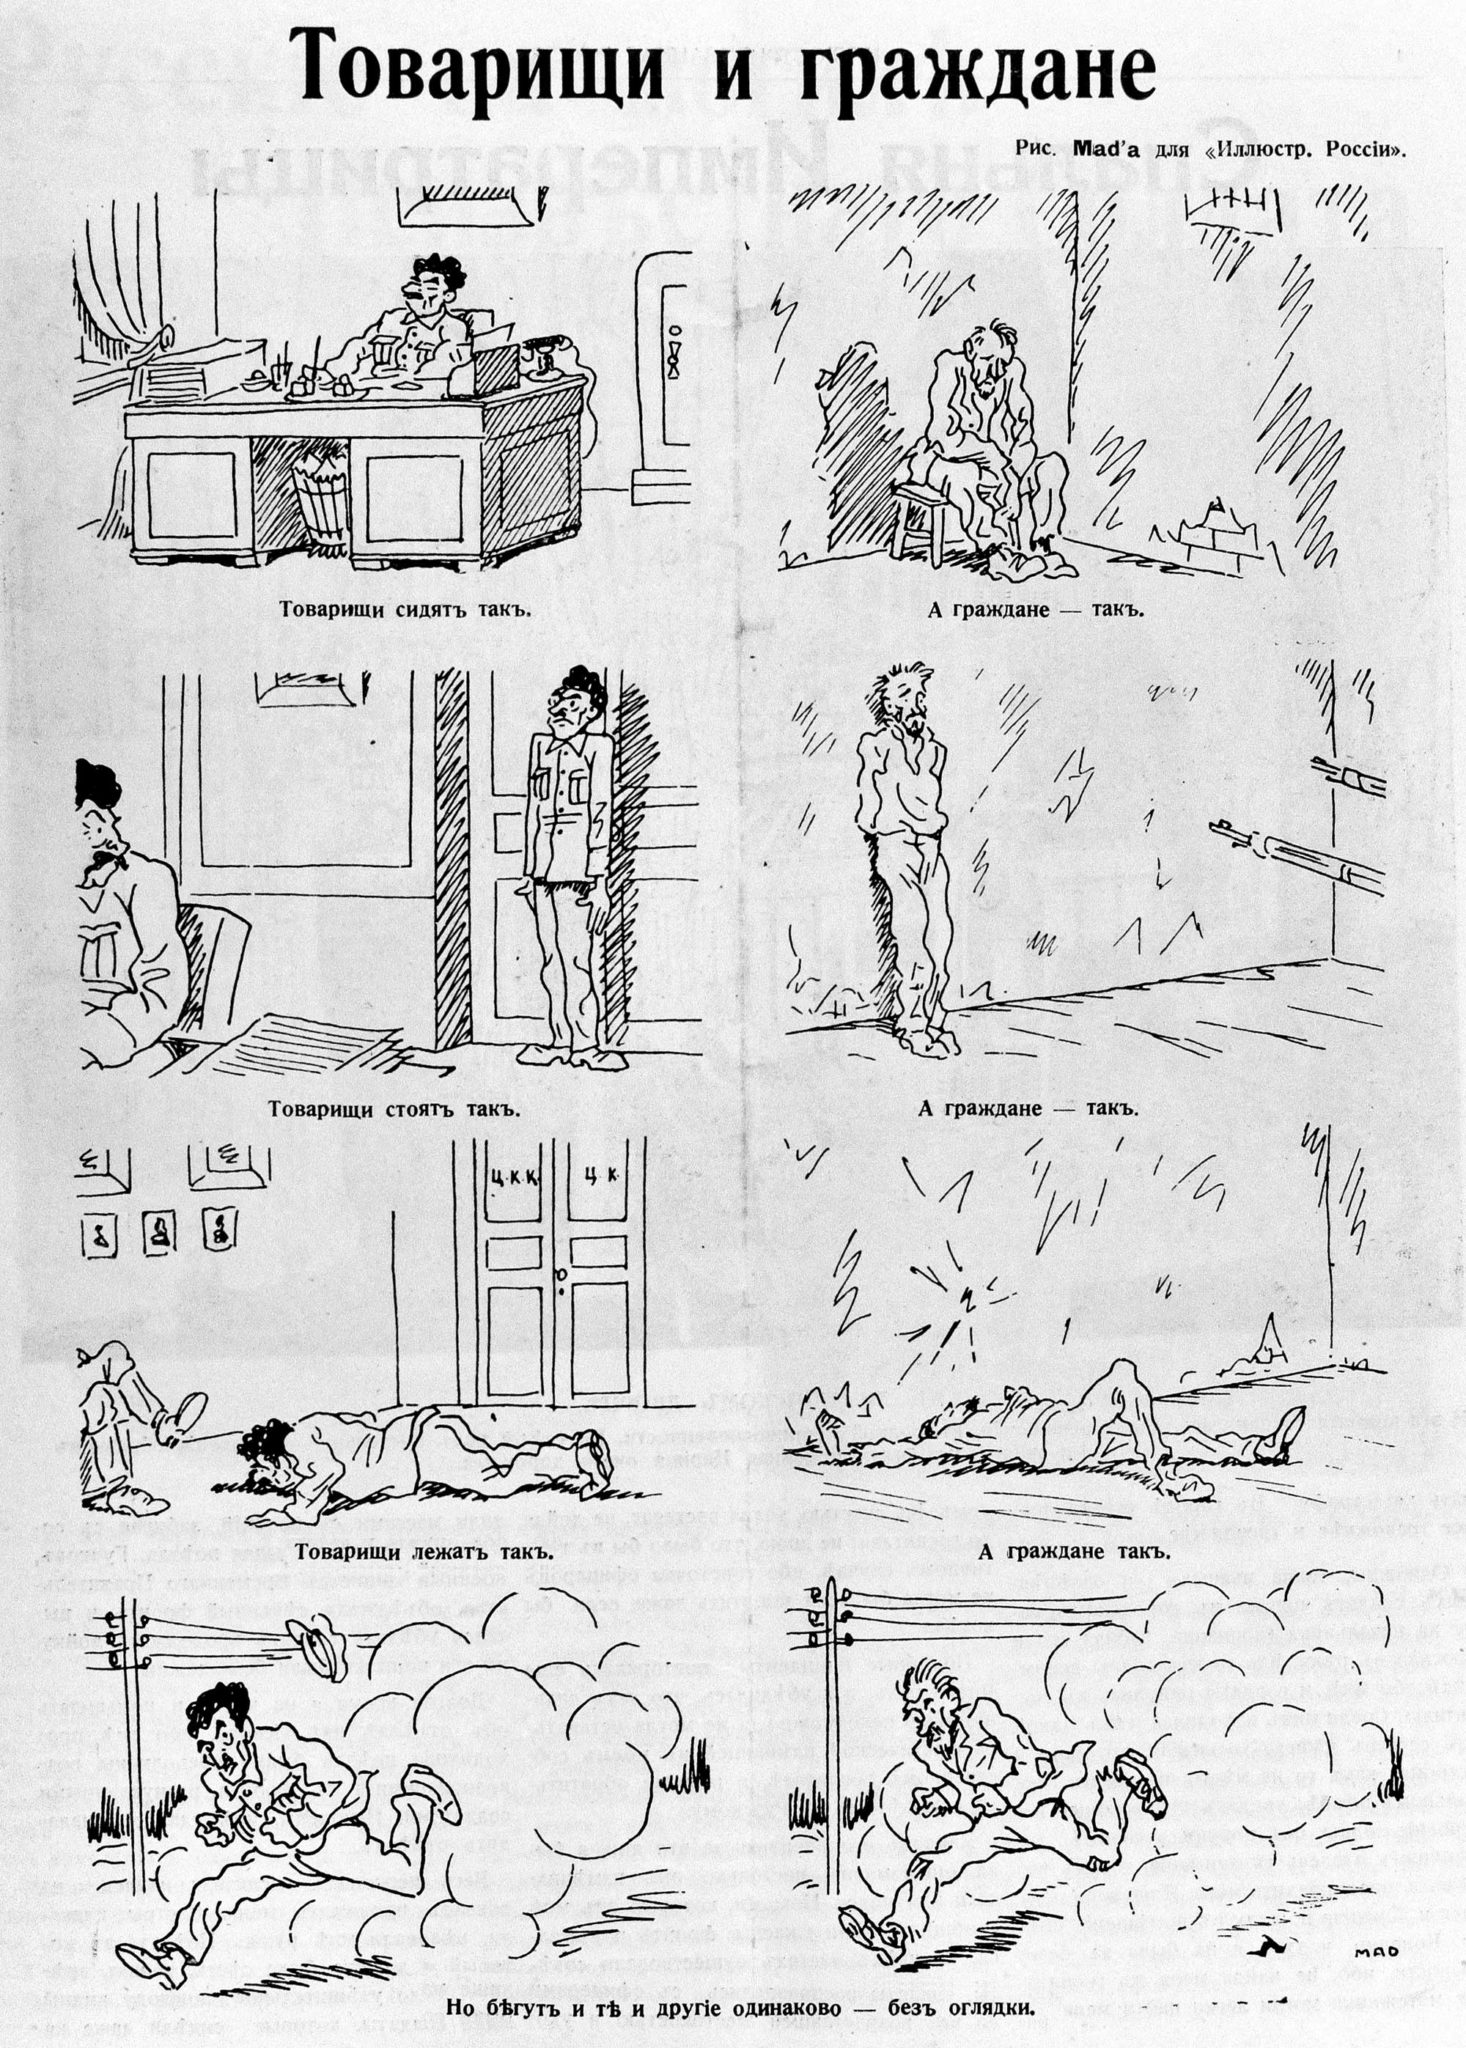 «Товарищи и граждане», журнал «Иллюстрированная Россия», выпуск № 30, 1930 год